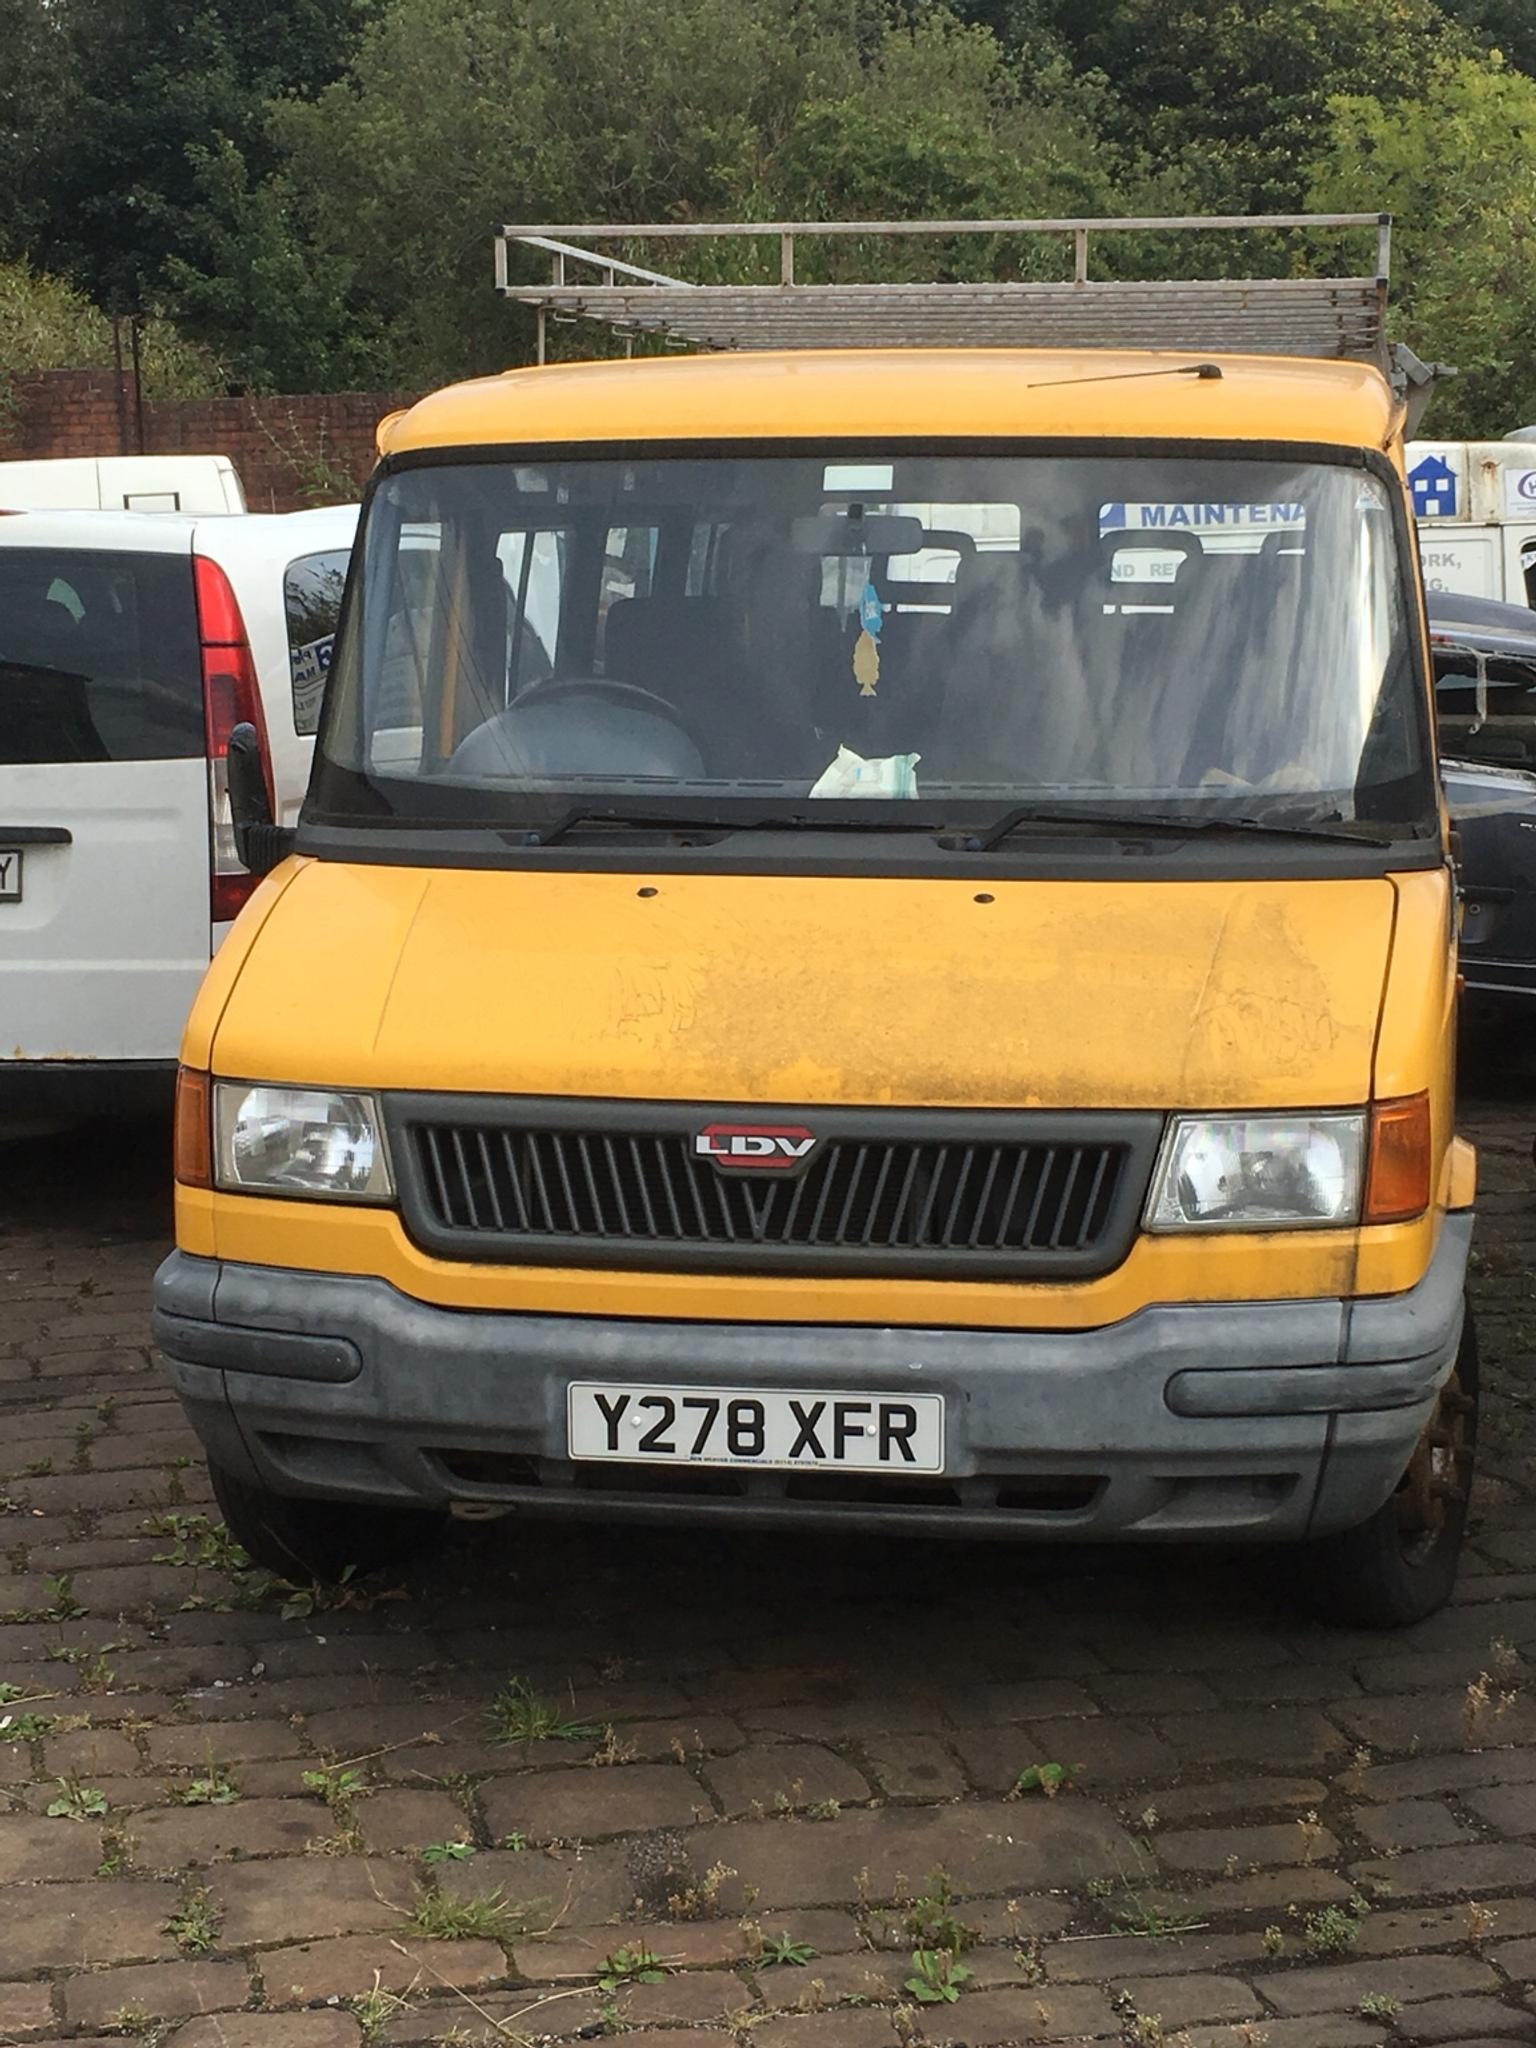 Ldv convoy minibus in S5 Sheffield for 